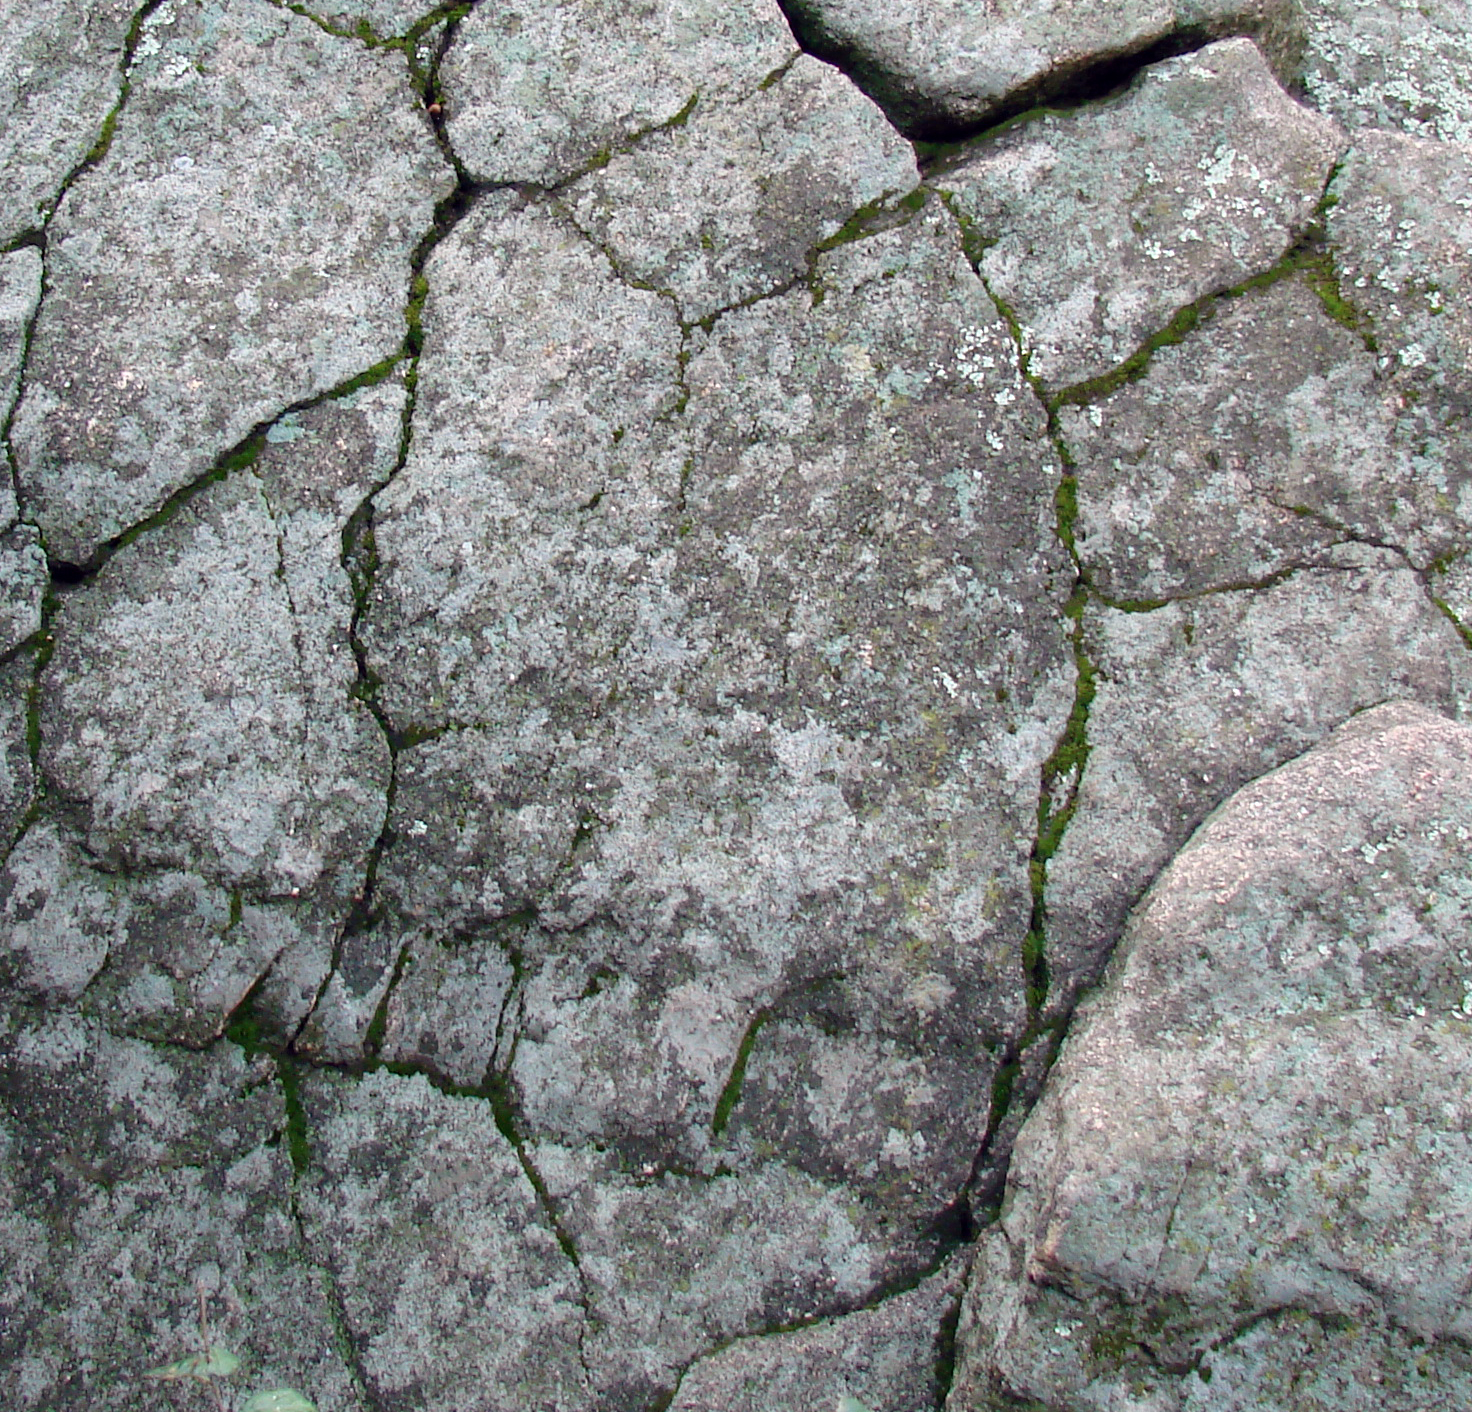 p54126-0-crackedrockalgae.jpg